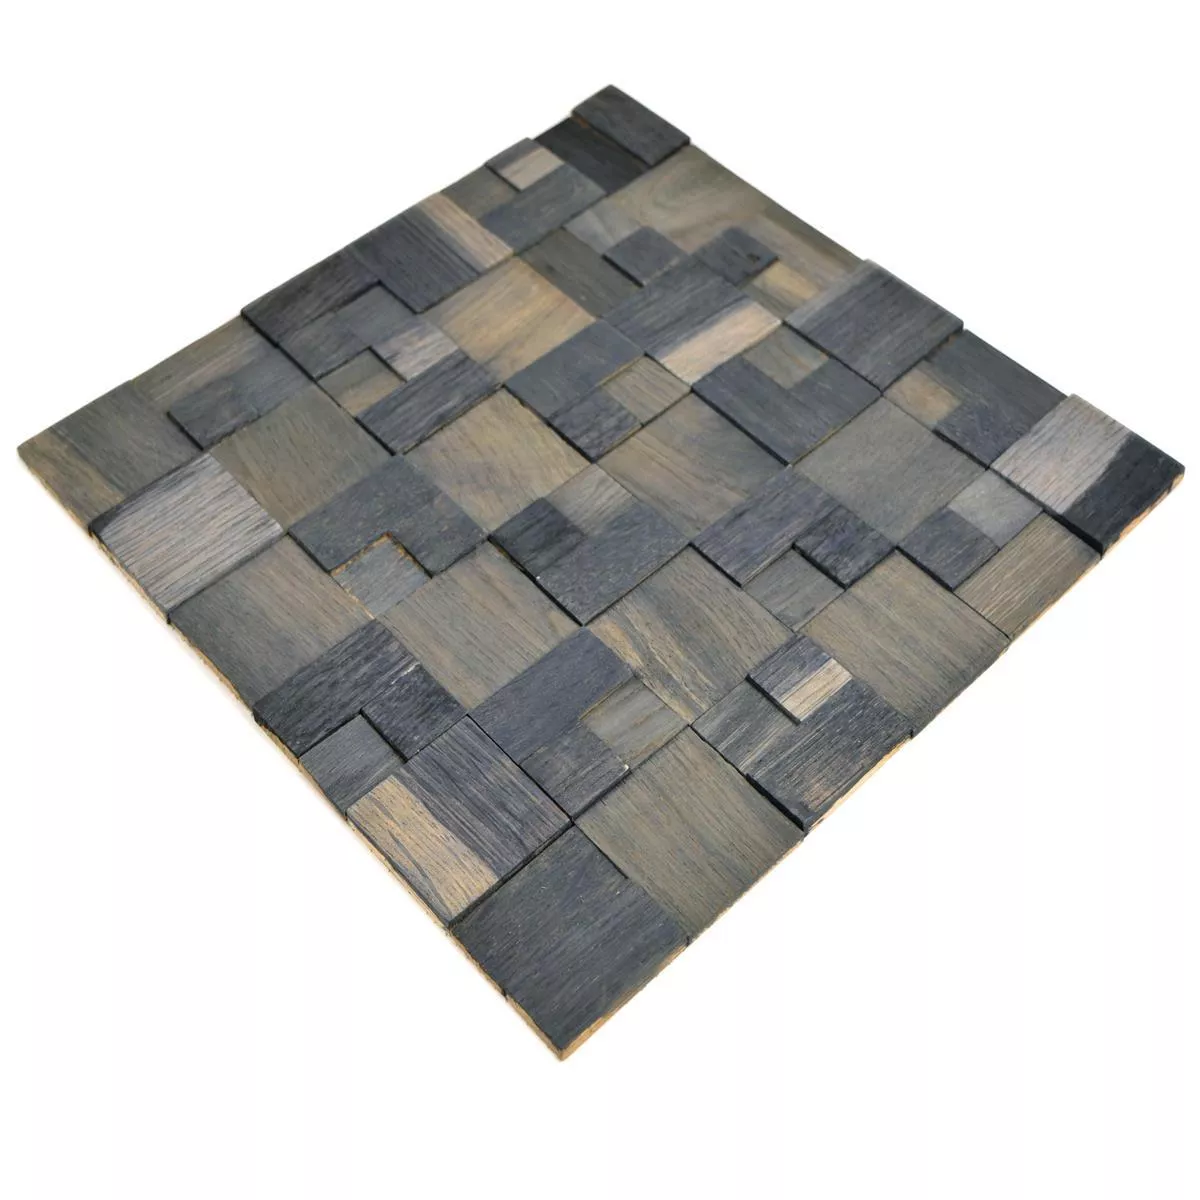 Mosaic Tiles Wood Paris Self Adhesive 3D Dark Grey